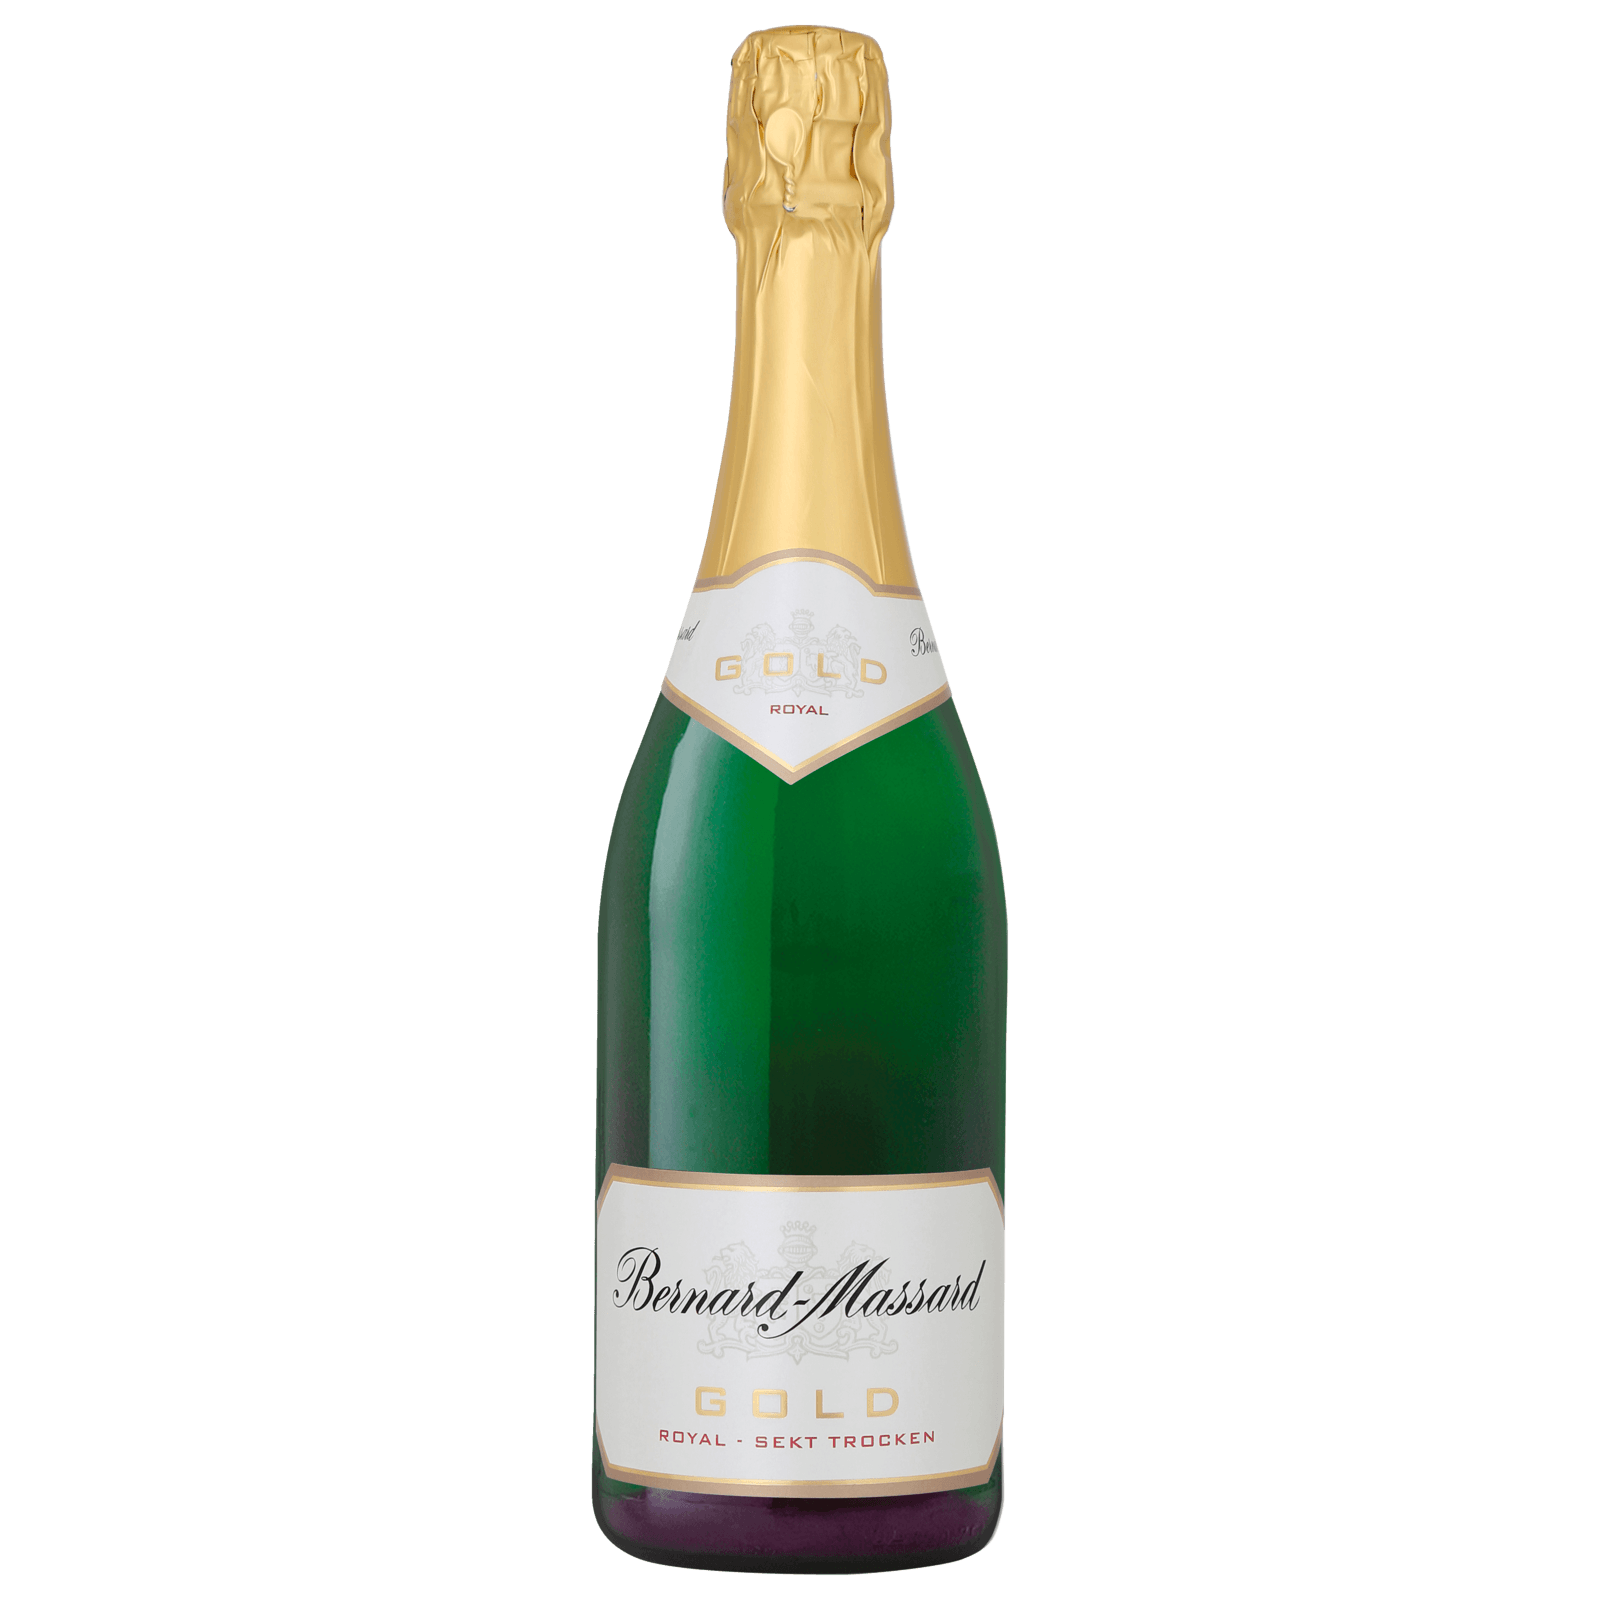 Bernard-Massard Gold Royal Sekt trocken 0,75l bei REWE online bestellen! | Champagner & Sekt